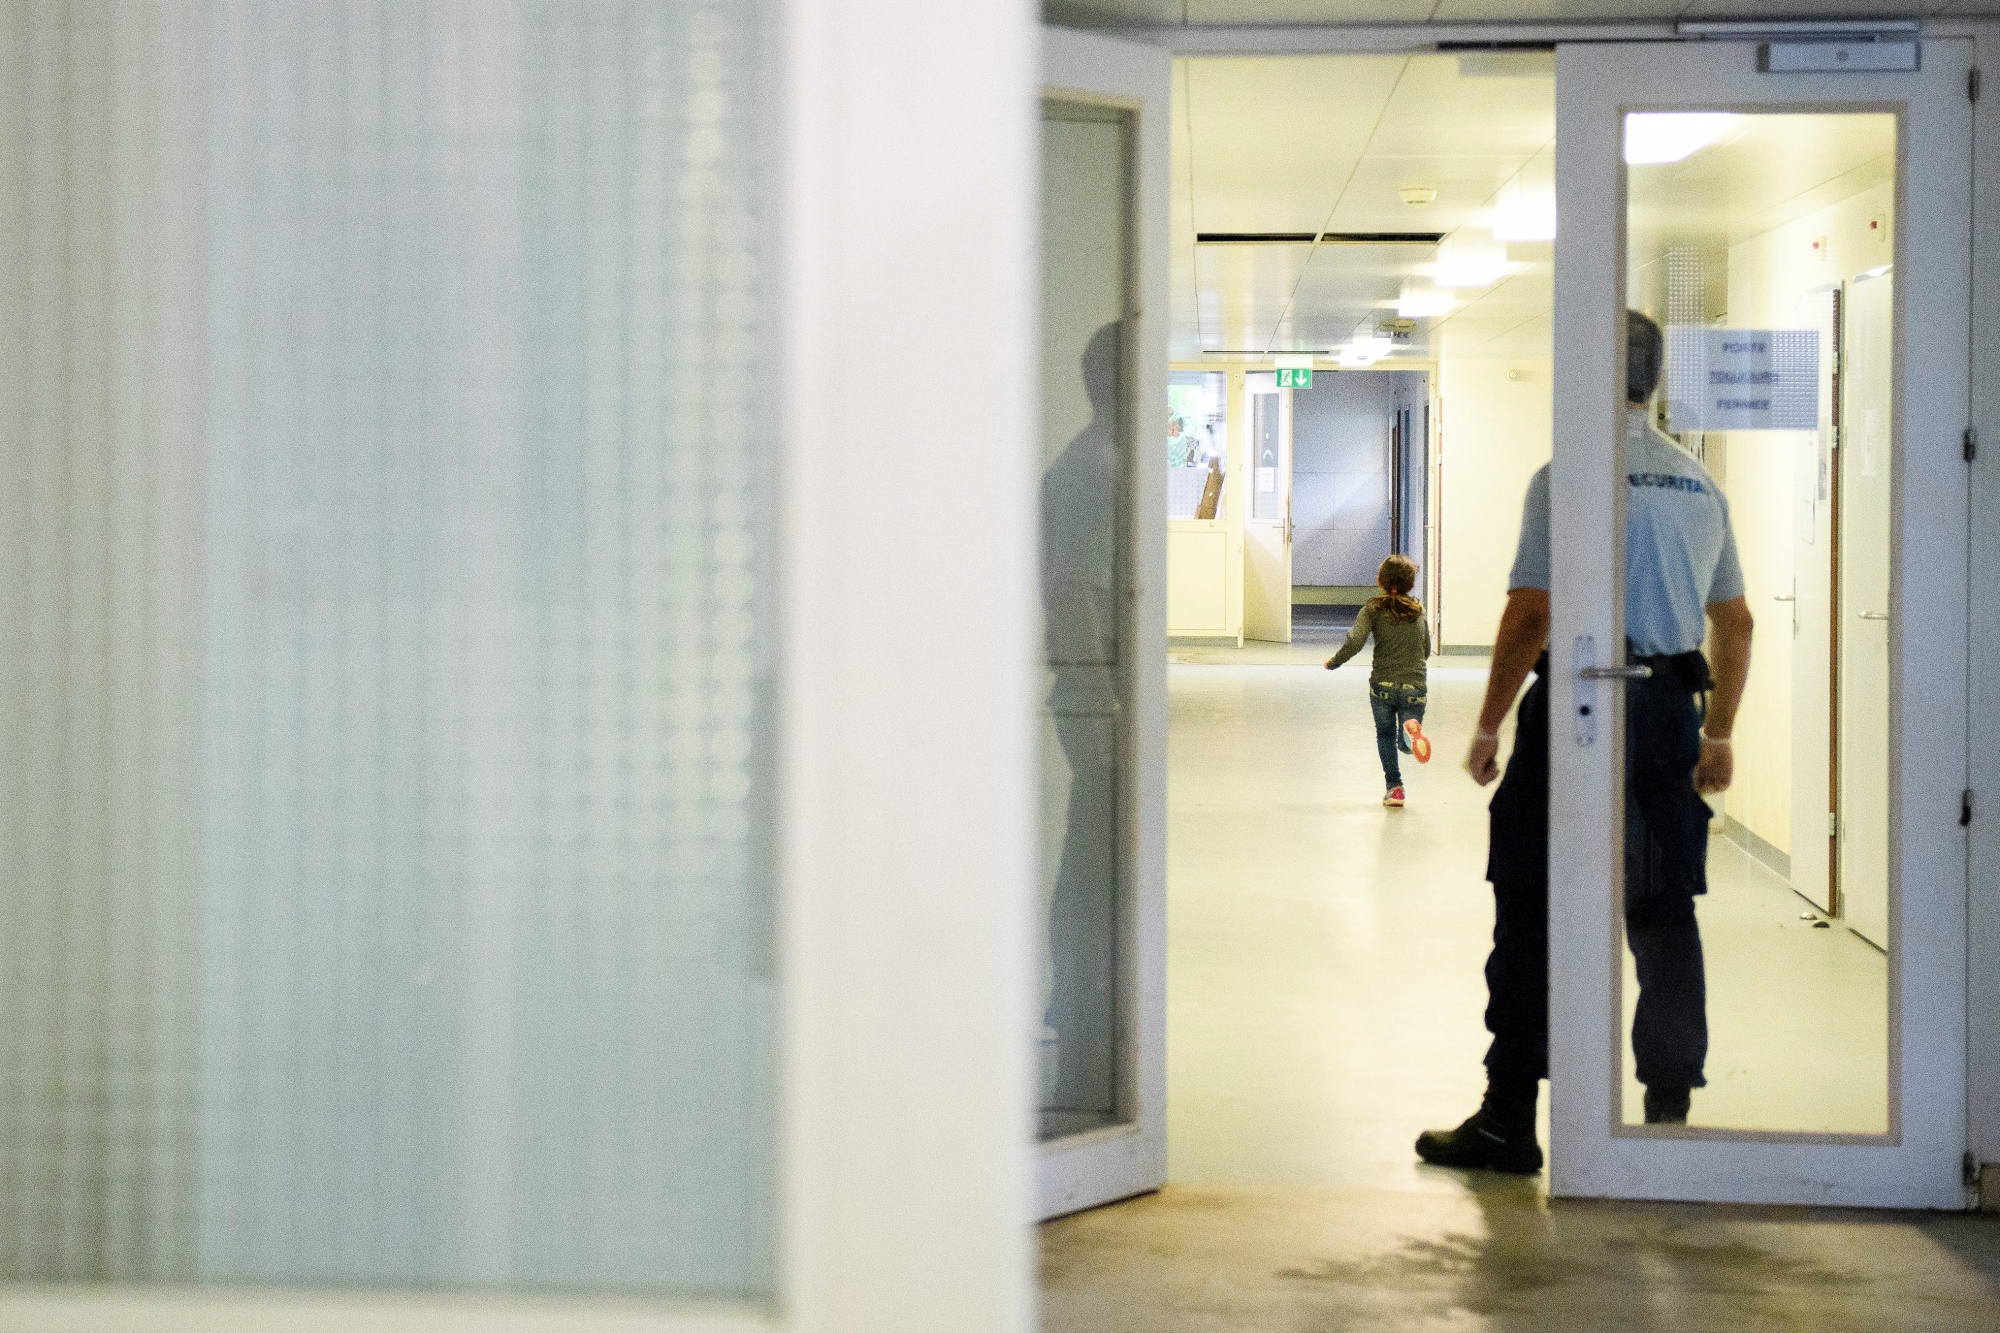 Ein Securitas Mitarbeiter geobachtet ein Kind in einem Gang im Bundesasylzentrum Perreux fotografiert anlaesslich einer Medienbesichtigung am Mittwoch, 11. Mai 2016, in Perreux. (KEYSTONE/Manuel Lopez) SCHWEIZ BUNDESASYLZENTRUM PERREUX